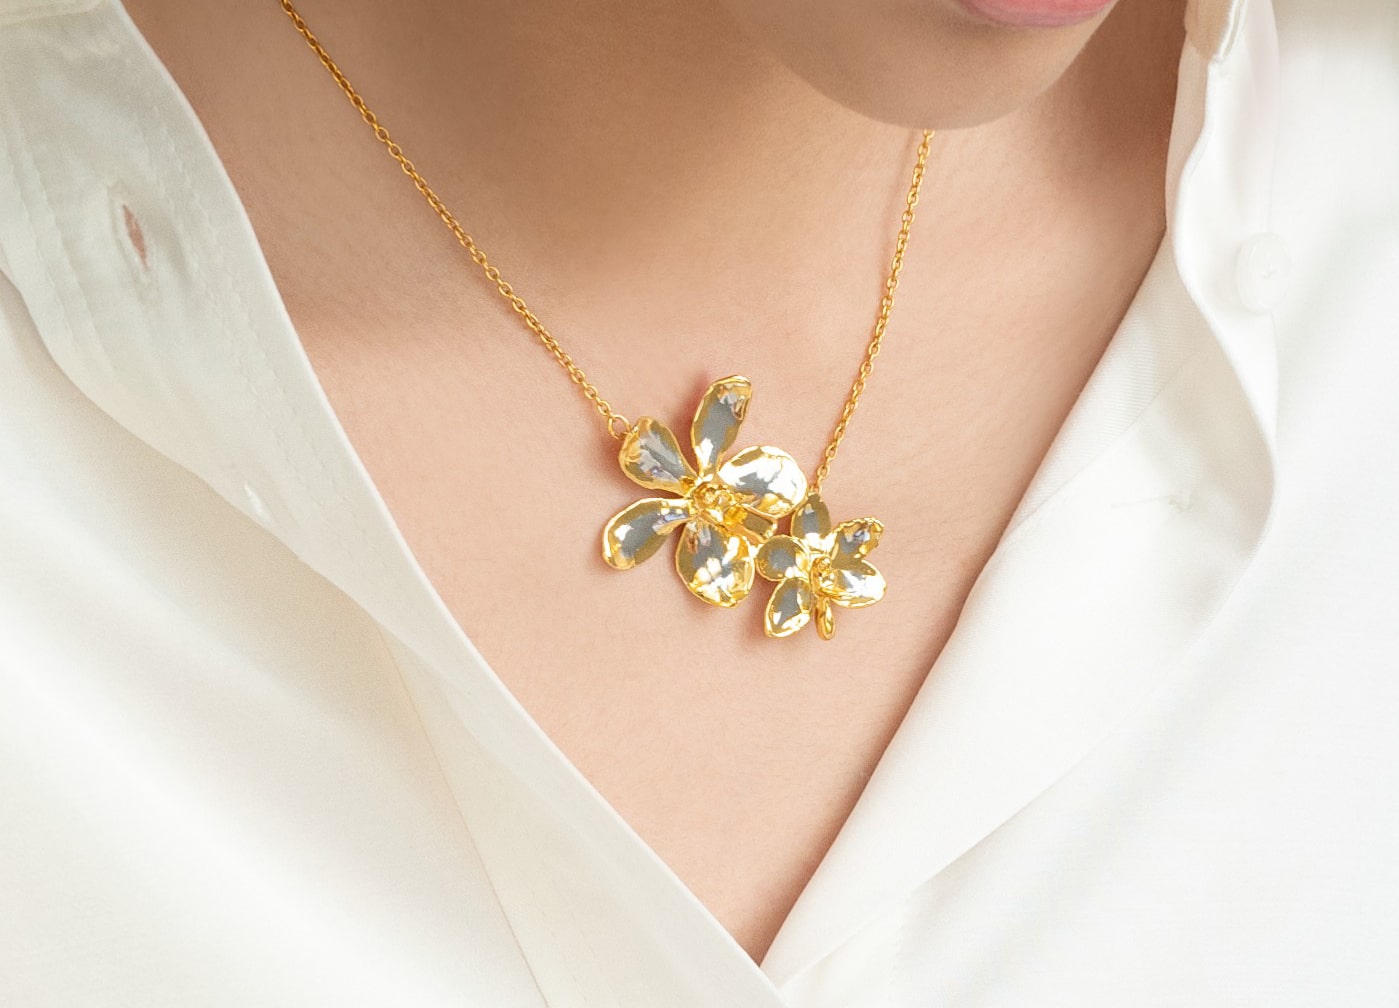 singapore souvenirs - risis necklace